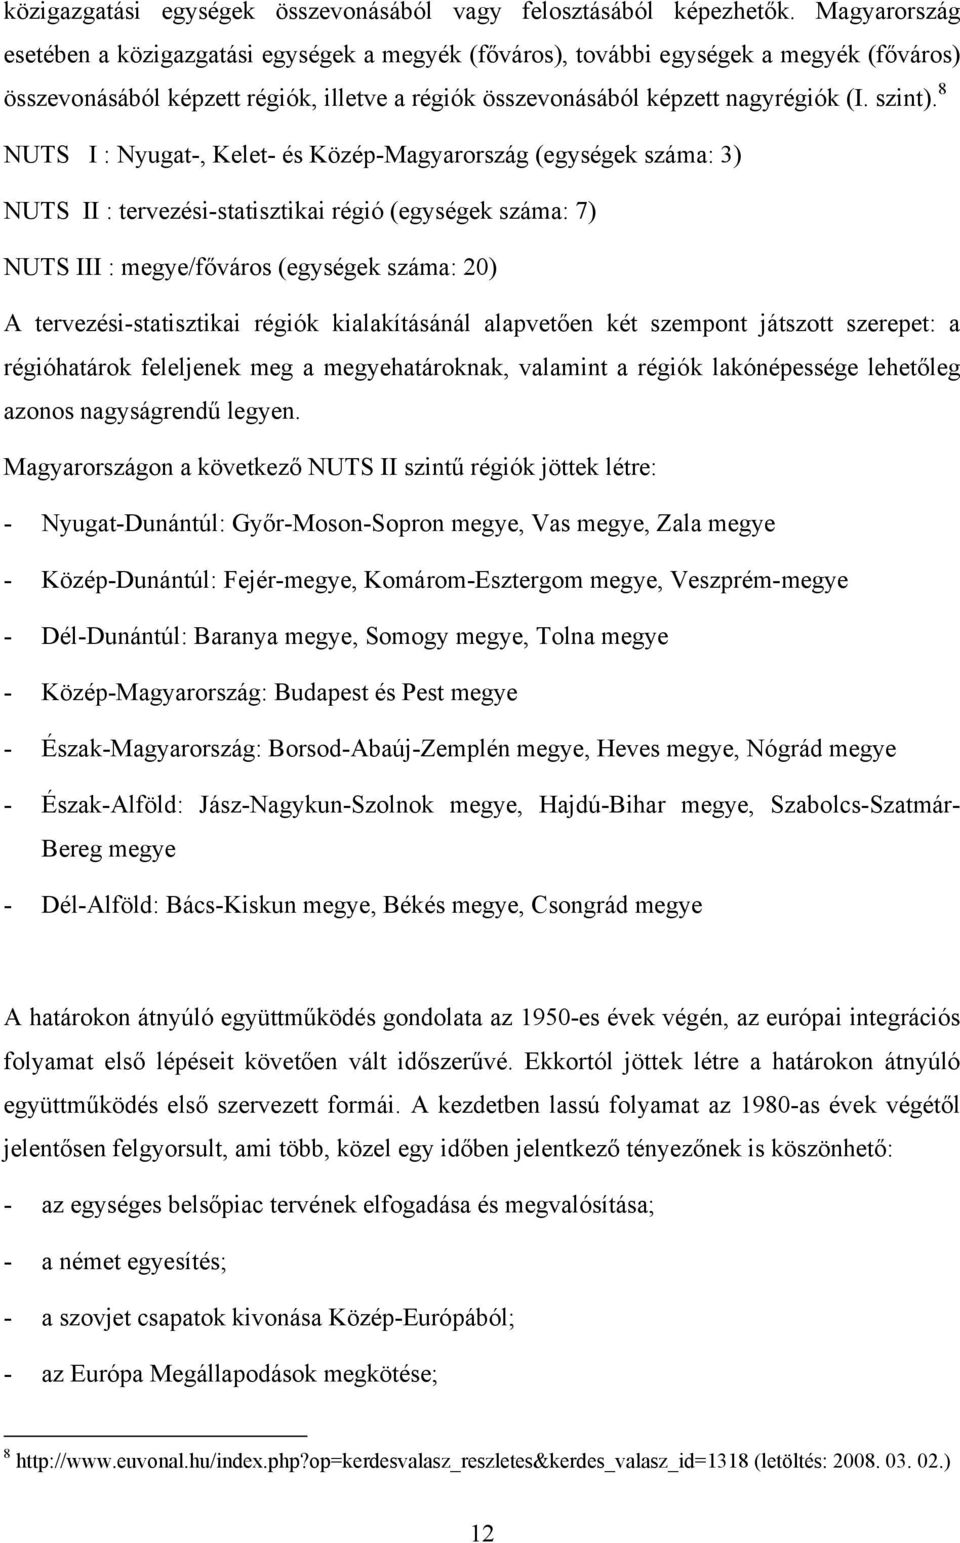 8 NUTS I : Nyugat-, Kelet- és Közép-Magyarország (egységek száma: 3) NUTS II : tervezési-statisztikai régió (egységek száma: 7) NUTS III : megye/főváros (egységek száma: 20) A tervezési-statisztikai